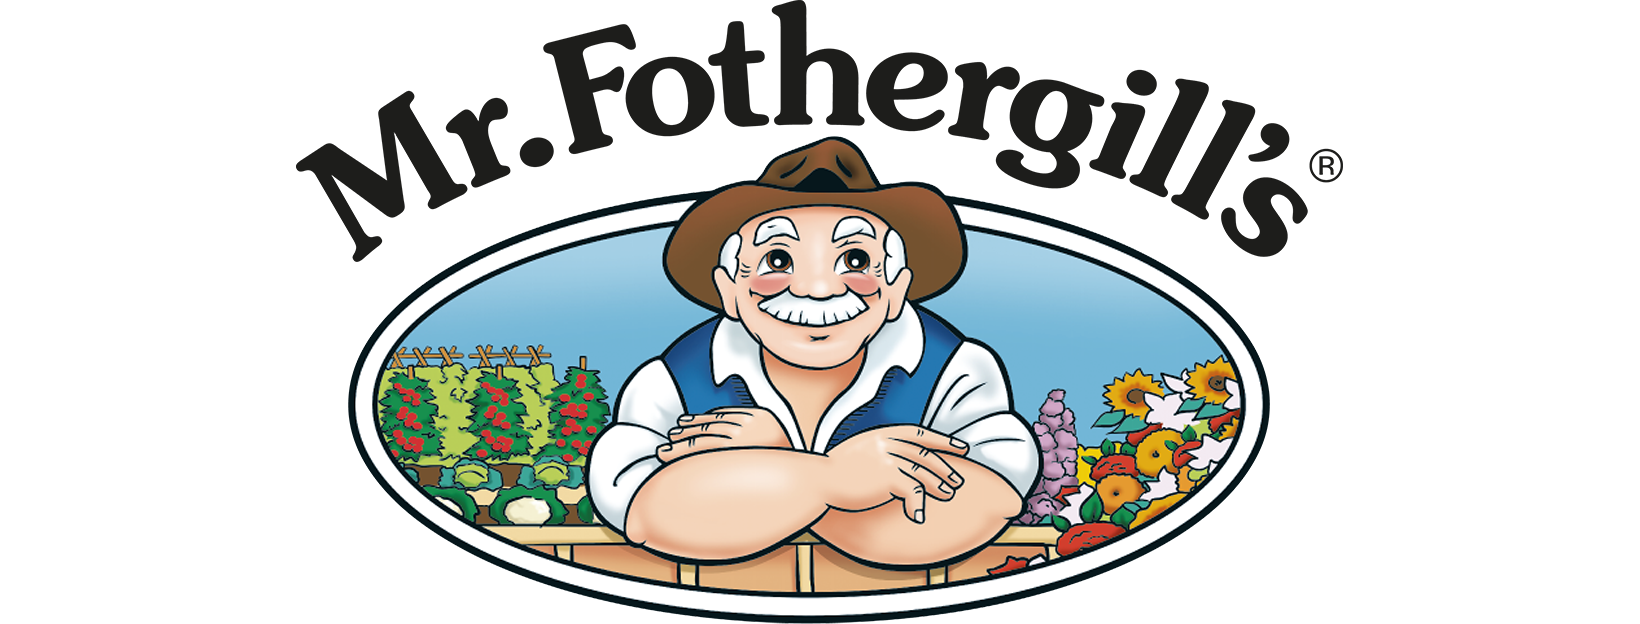 Mr Fothergill's logo